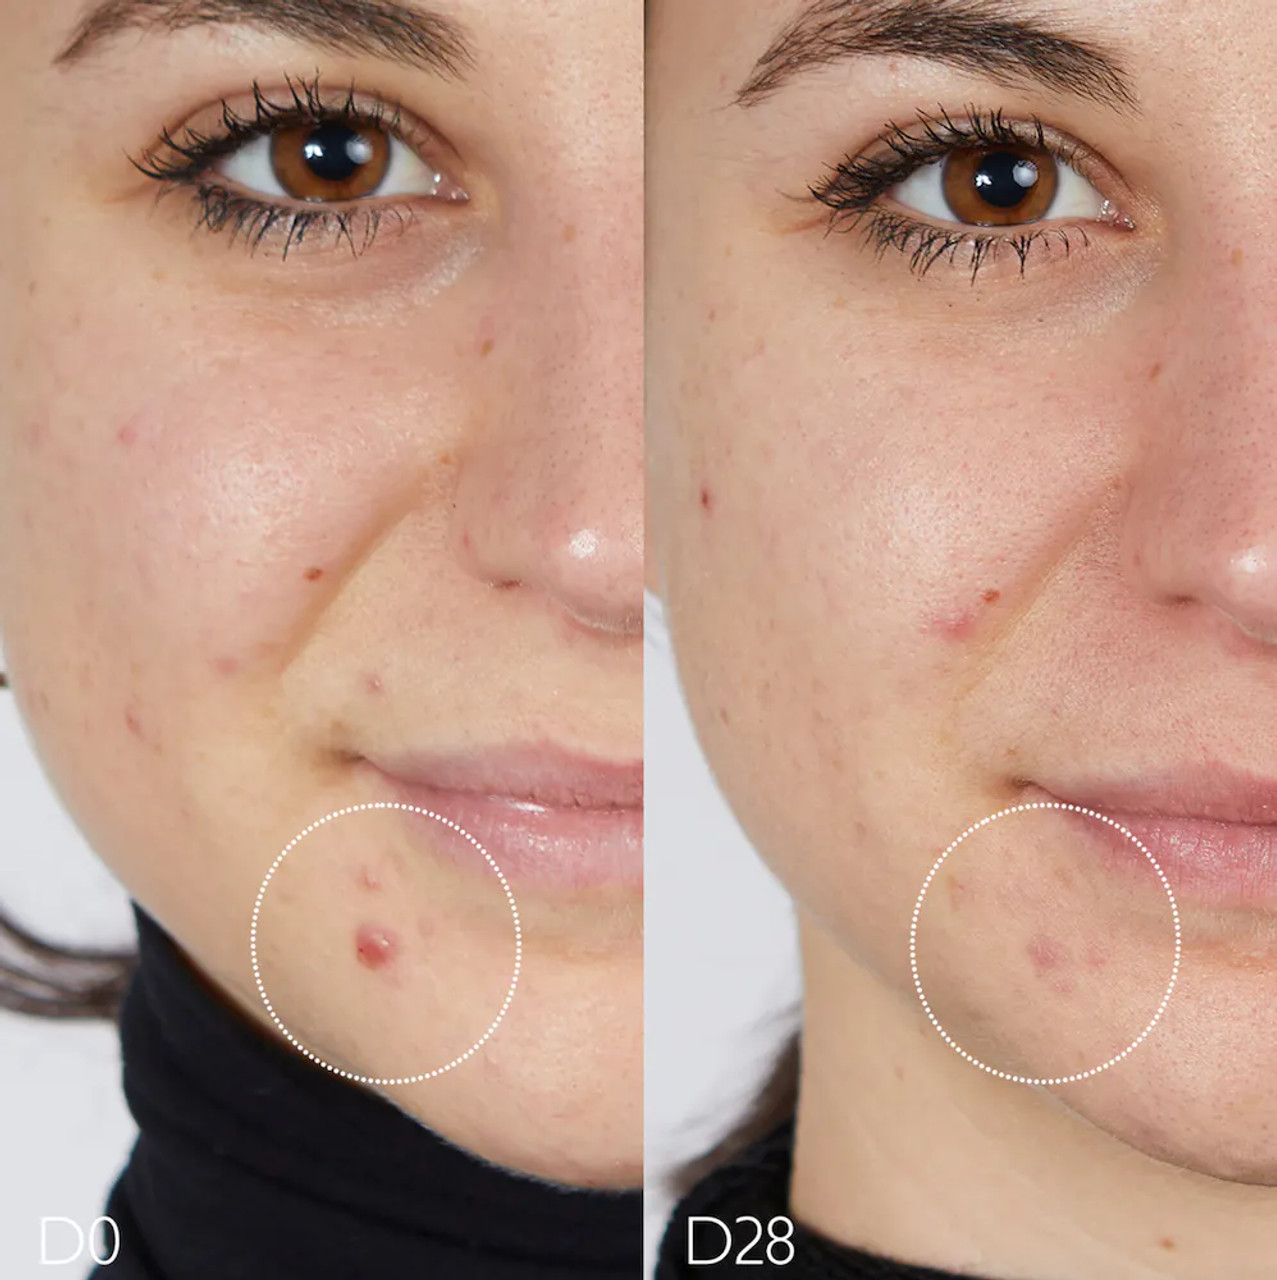 Caudalie Vinopure Skincare for Acne: The Review - Escentual's Blog